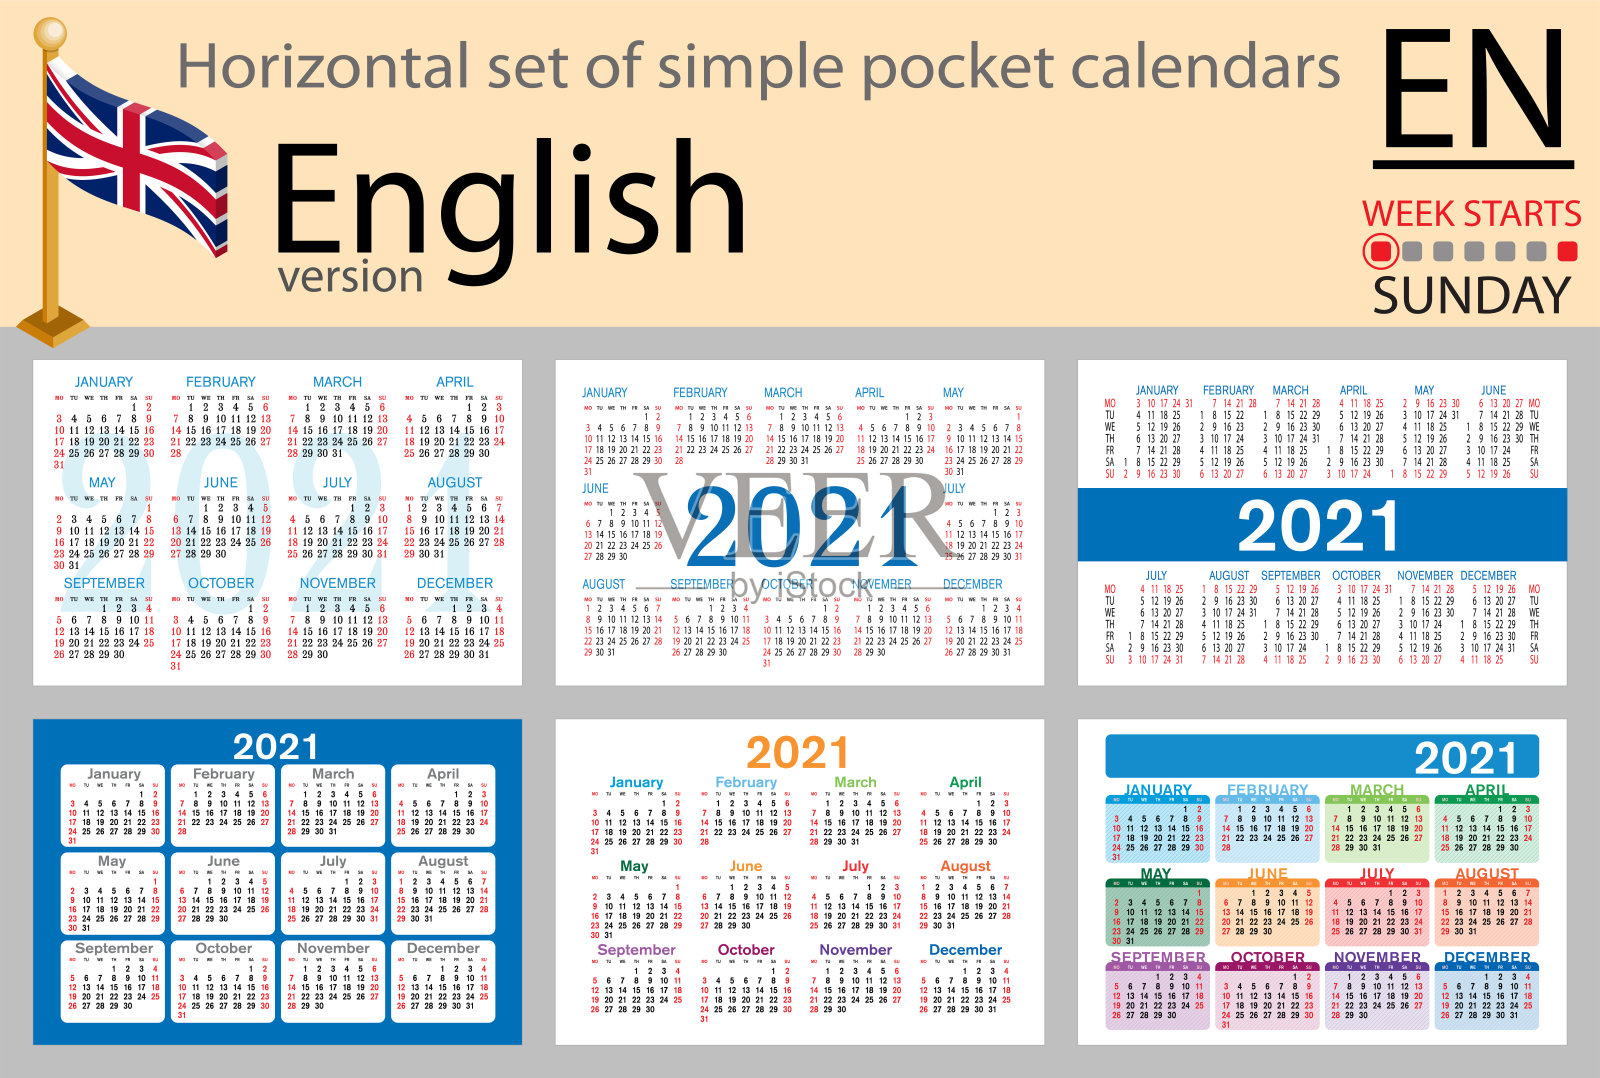 英语水平口袋日历2021年设计模板素材